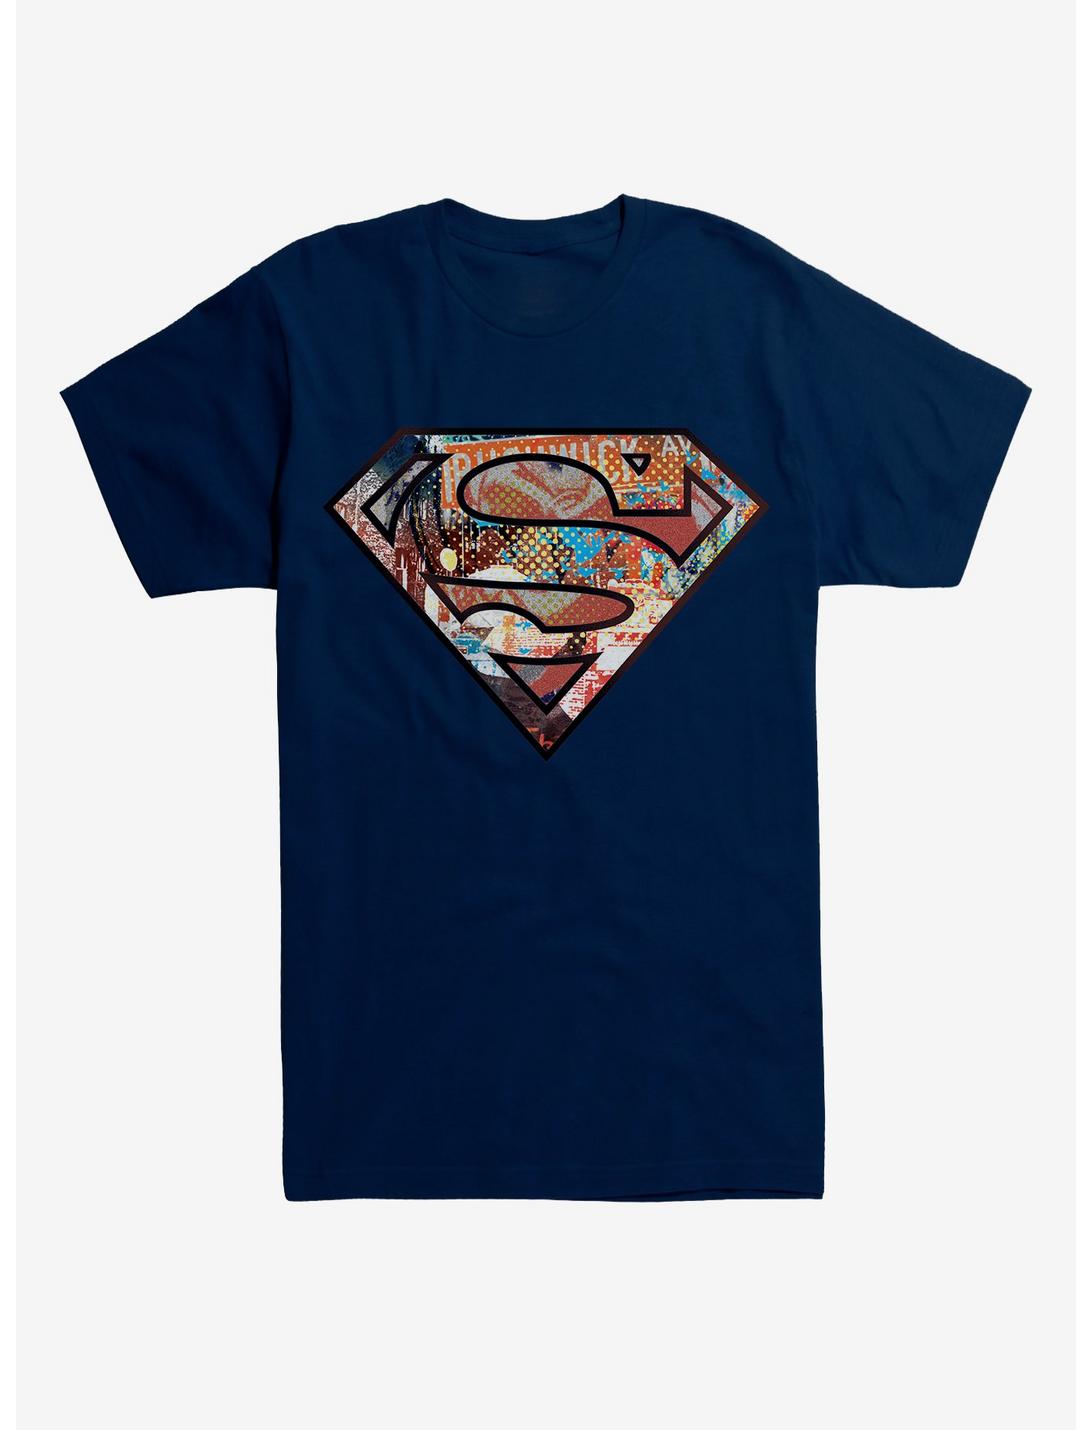 DC Comics Superman Pop Art Logo T-Shirt, MIDNIGHT NAVY, hi-res